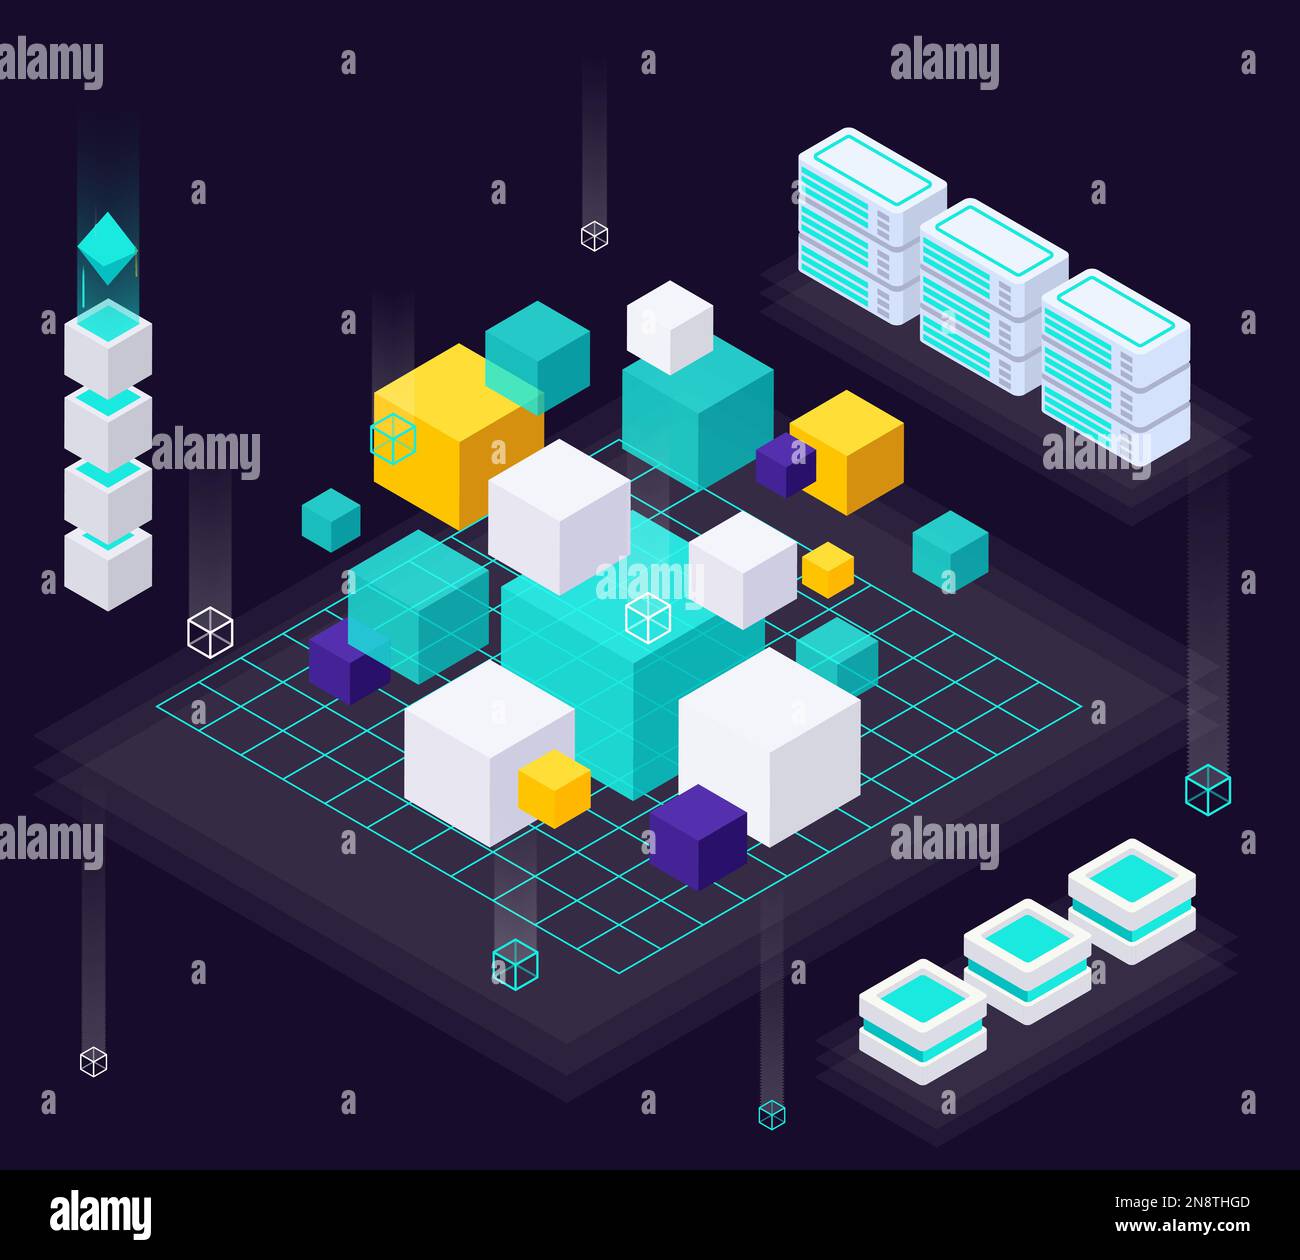 Composizione isometrica per l'economia dei dati con numerosi cubi colorati di diverse dimensioni con rack server che delineano l'illustrazione vettoriale Illustrazione Vettoriale